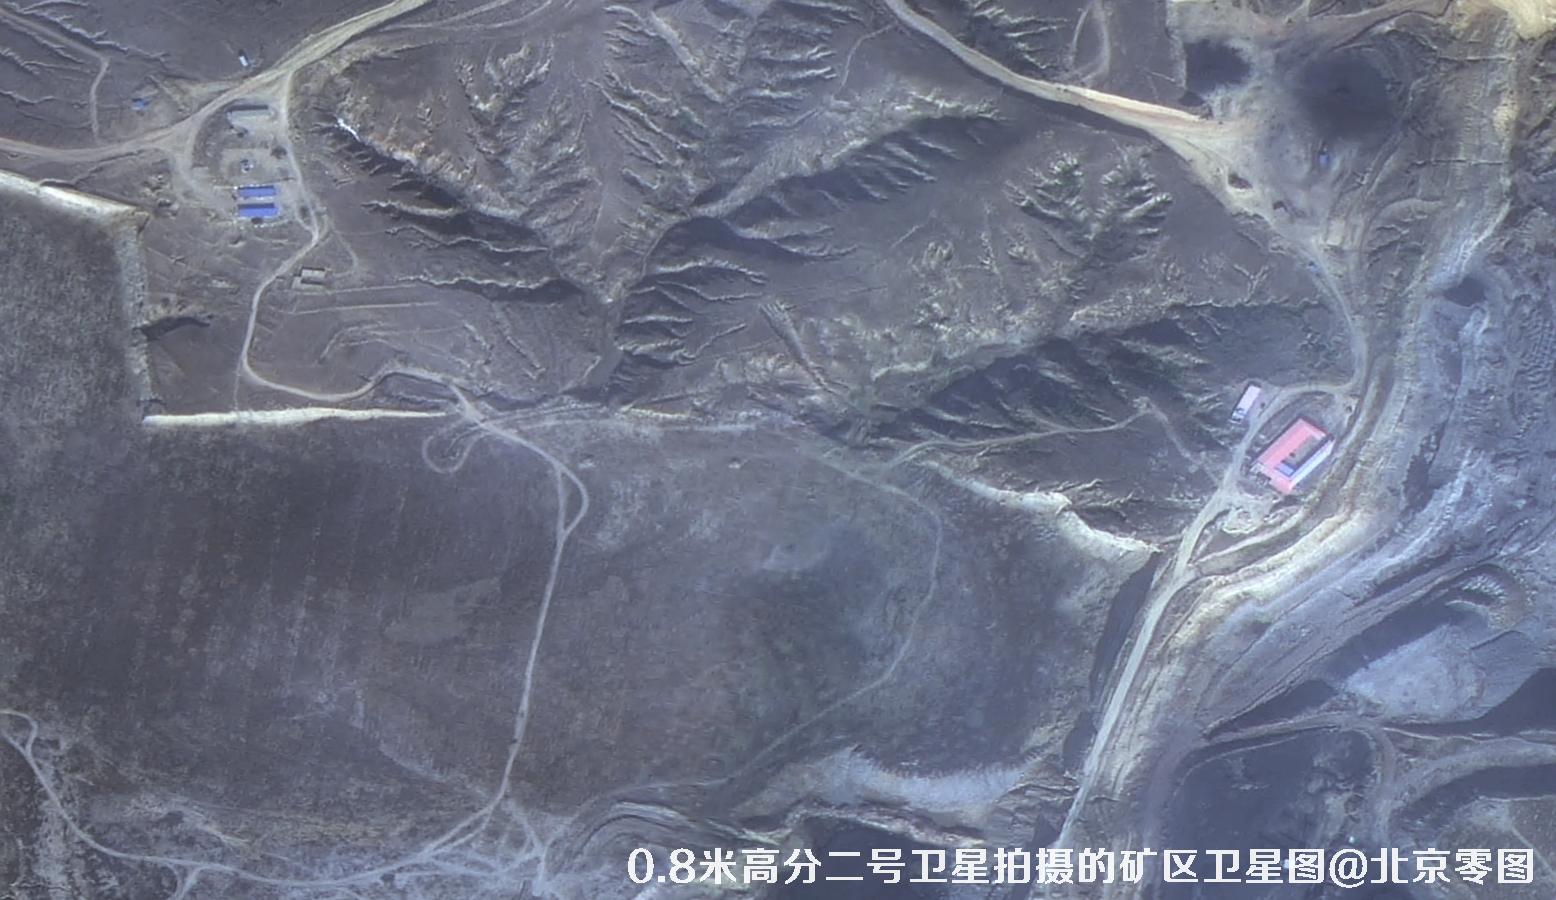 国产0.8米GF2卫星拍摄的高清图片